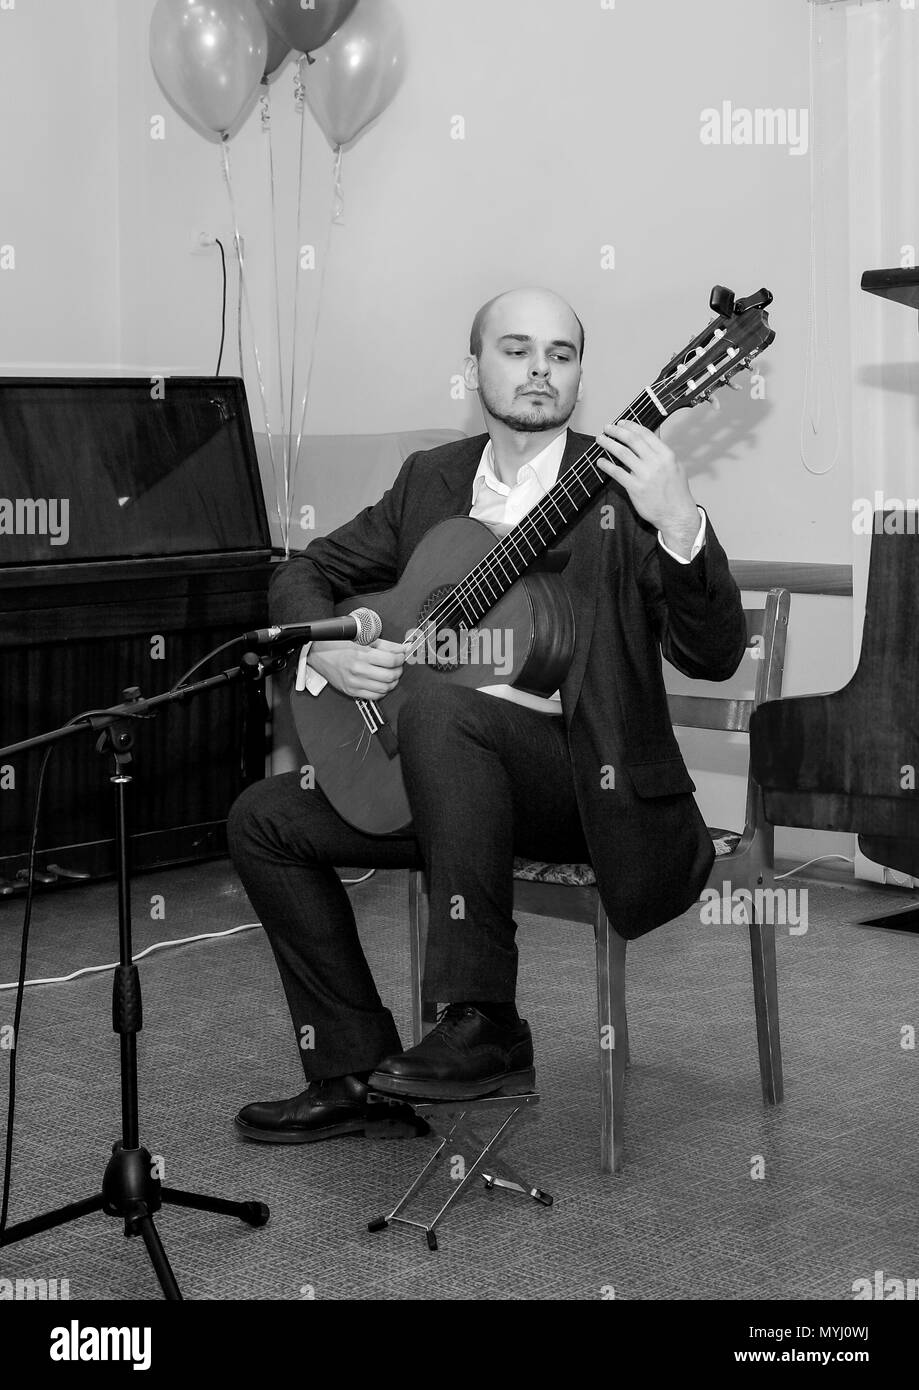 Photo en noir et blanc. Le musicien joue de la guitare. Banque D'Images